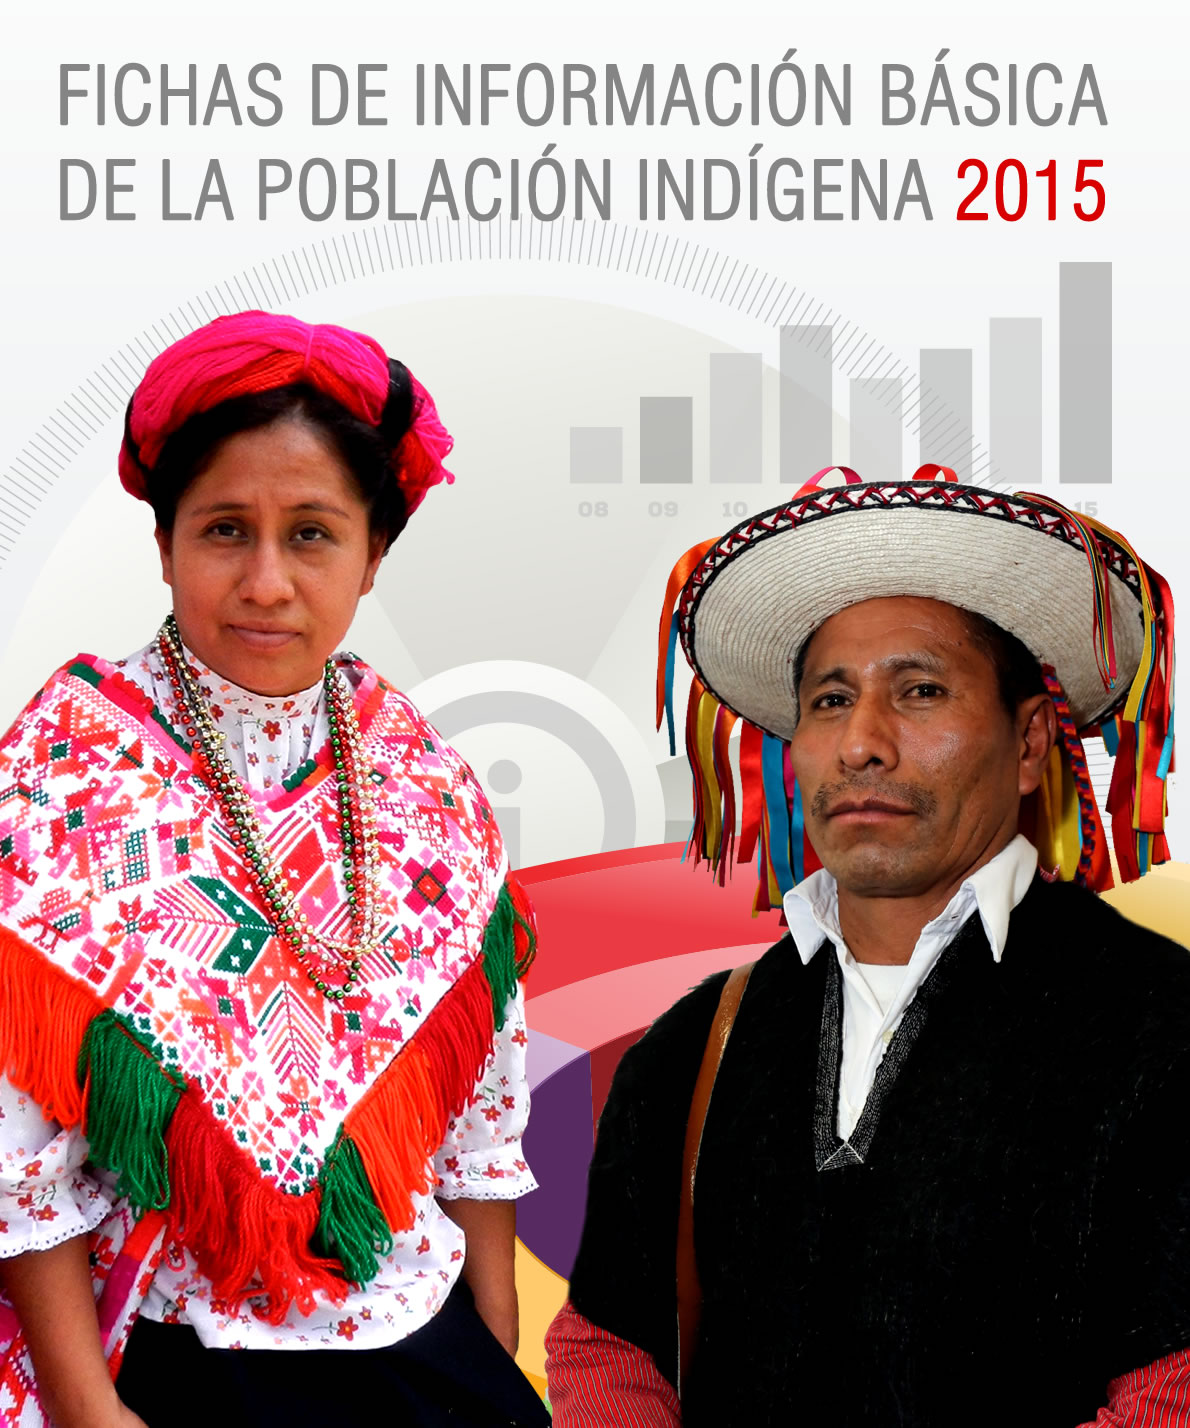 Fichas de Información Básica de la Población Indígena, 2015.